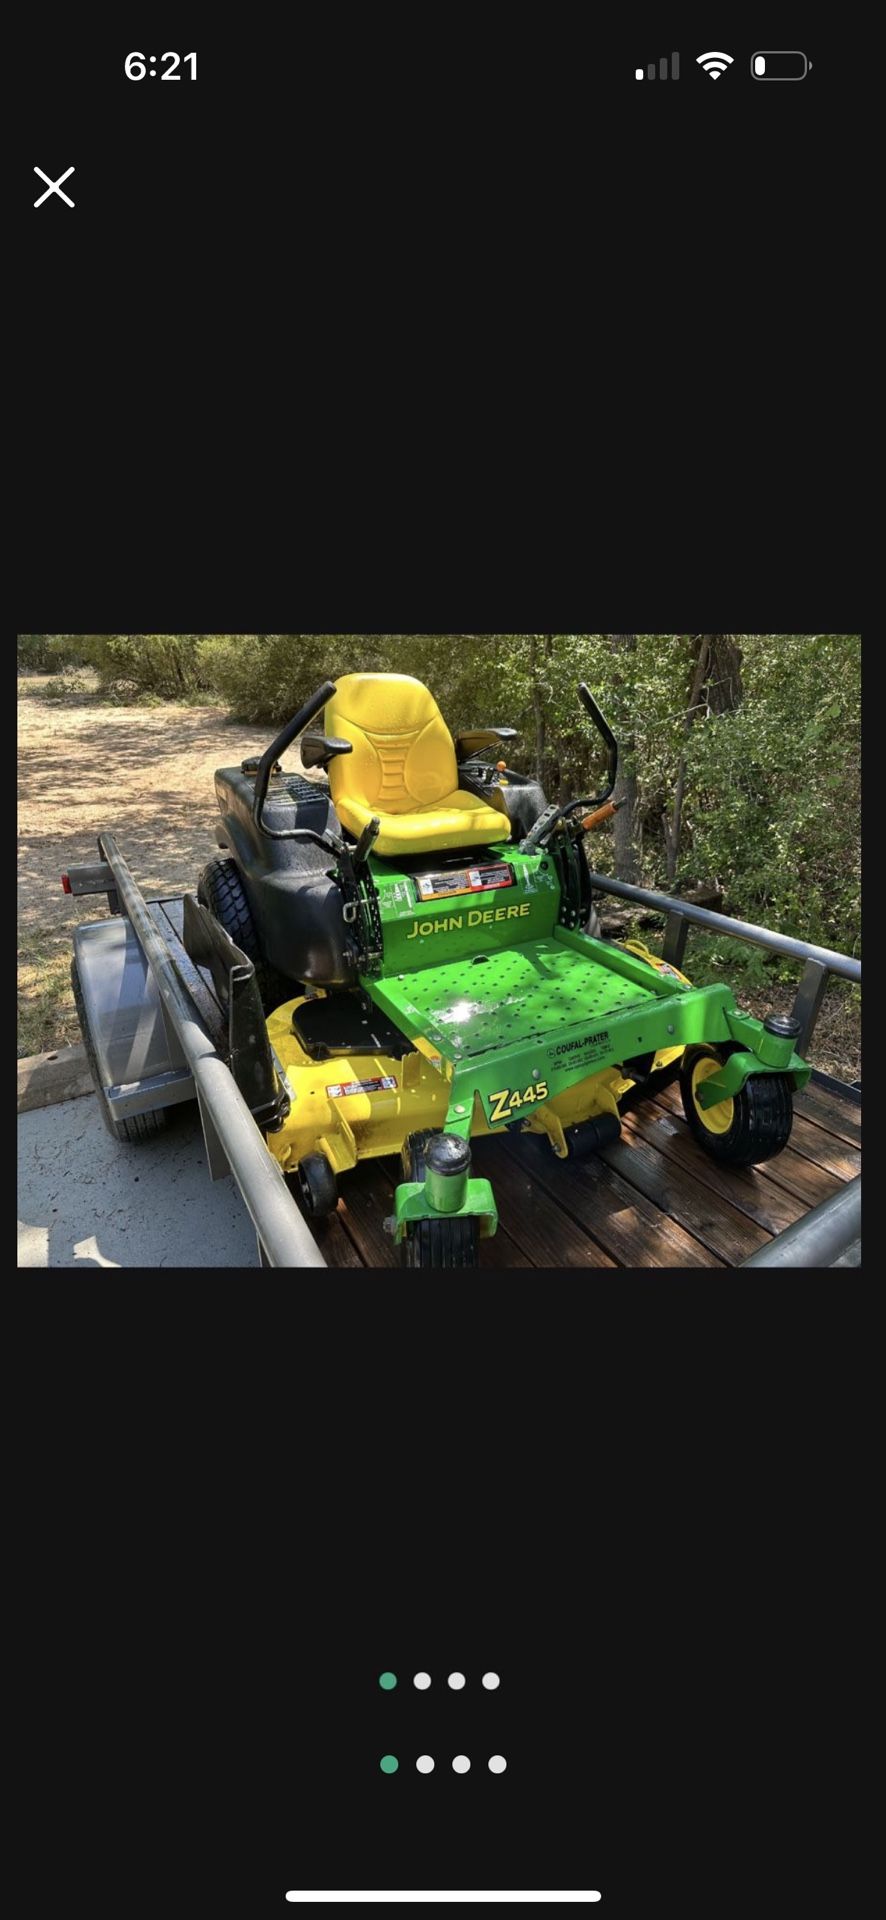 John Deere Z445 Lawn Mower $800